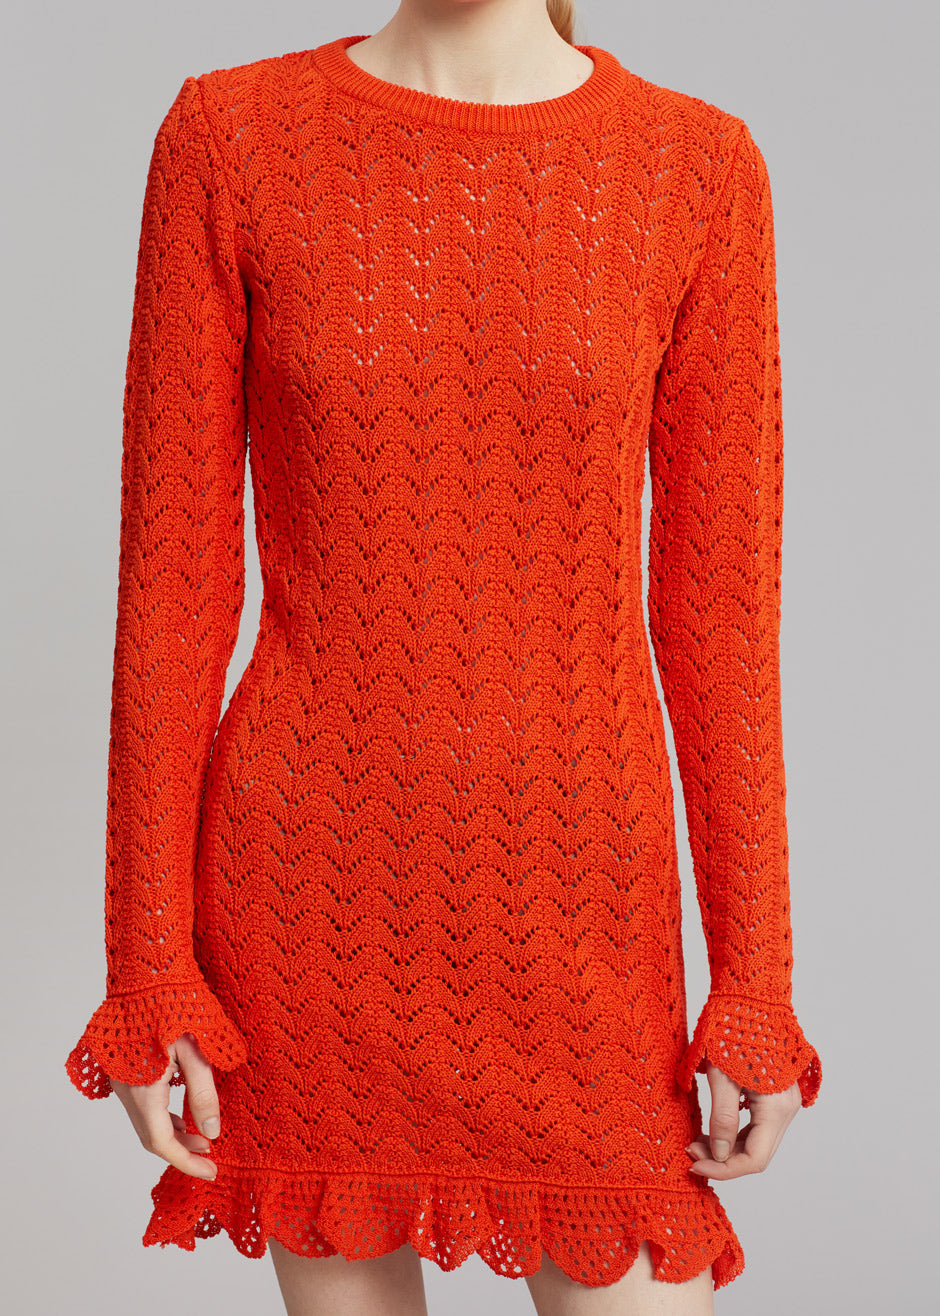 JW Anderson Frill Long Sleeve Crochet Dress - Orange - 3